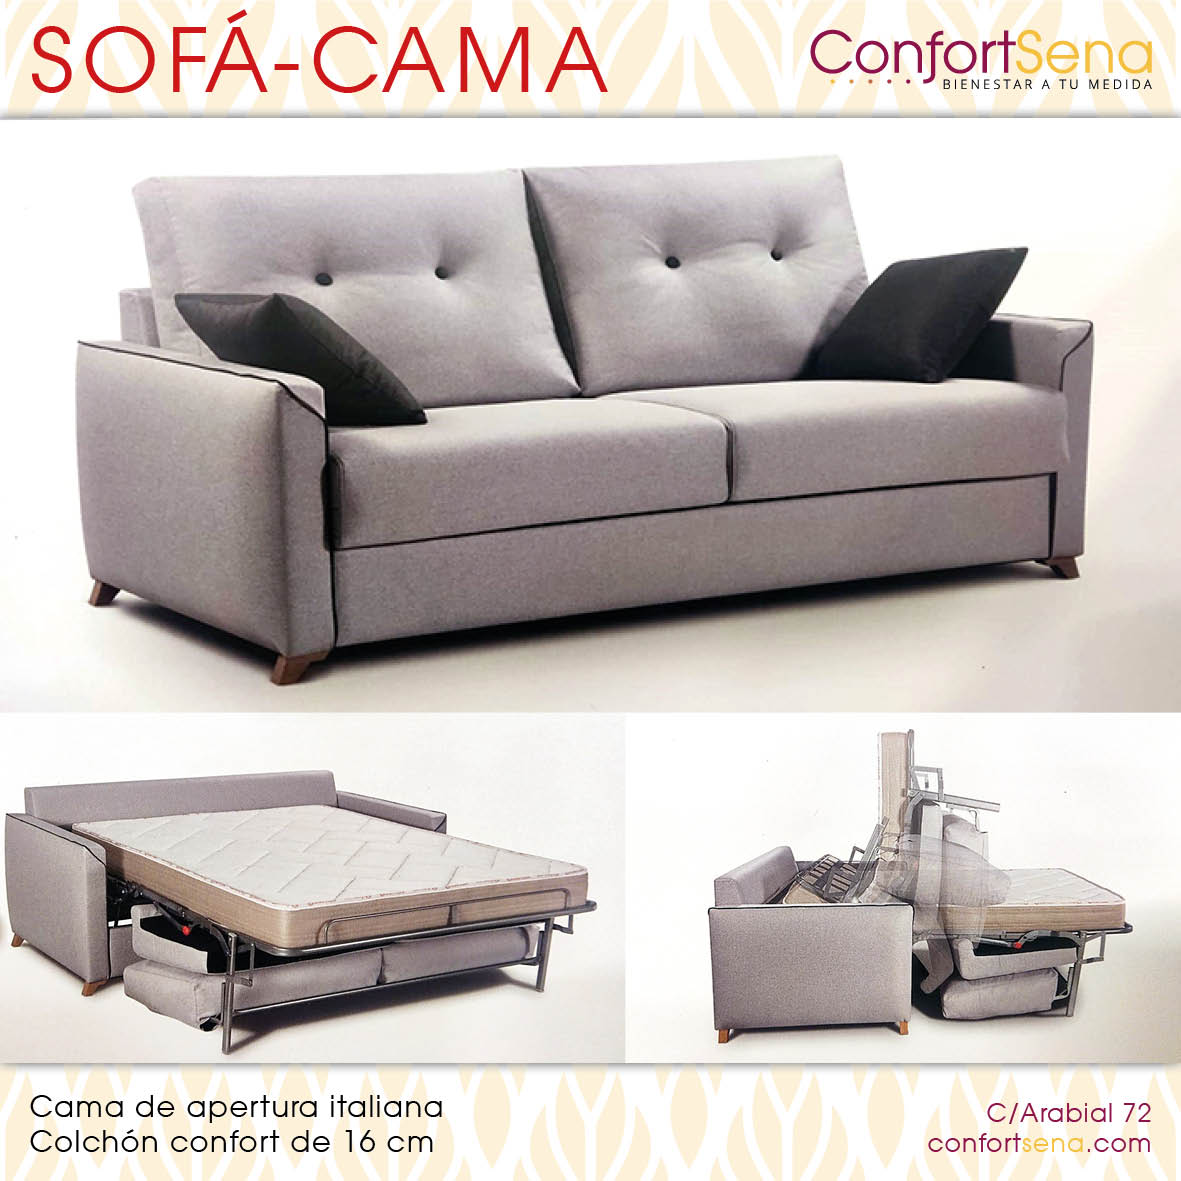 sofa cama granada chaise longue confortsena3